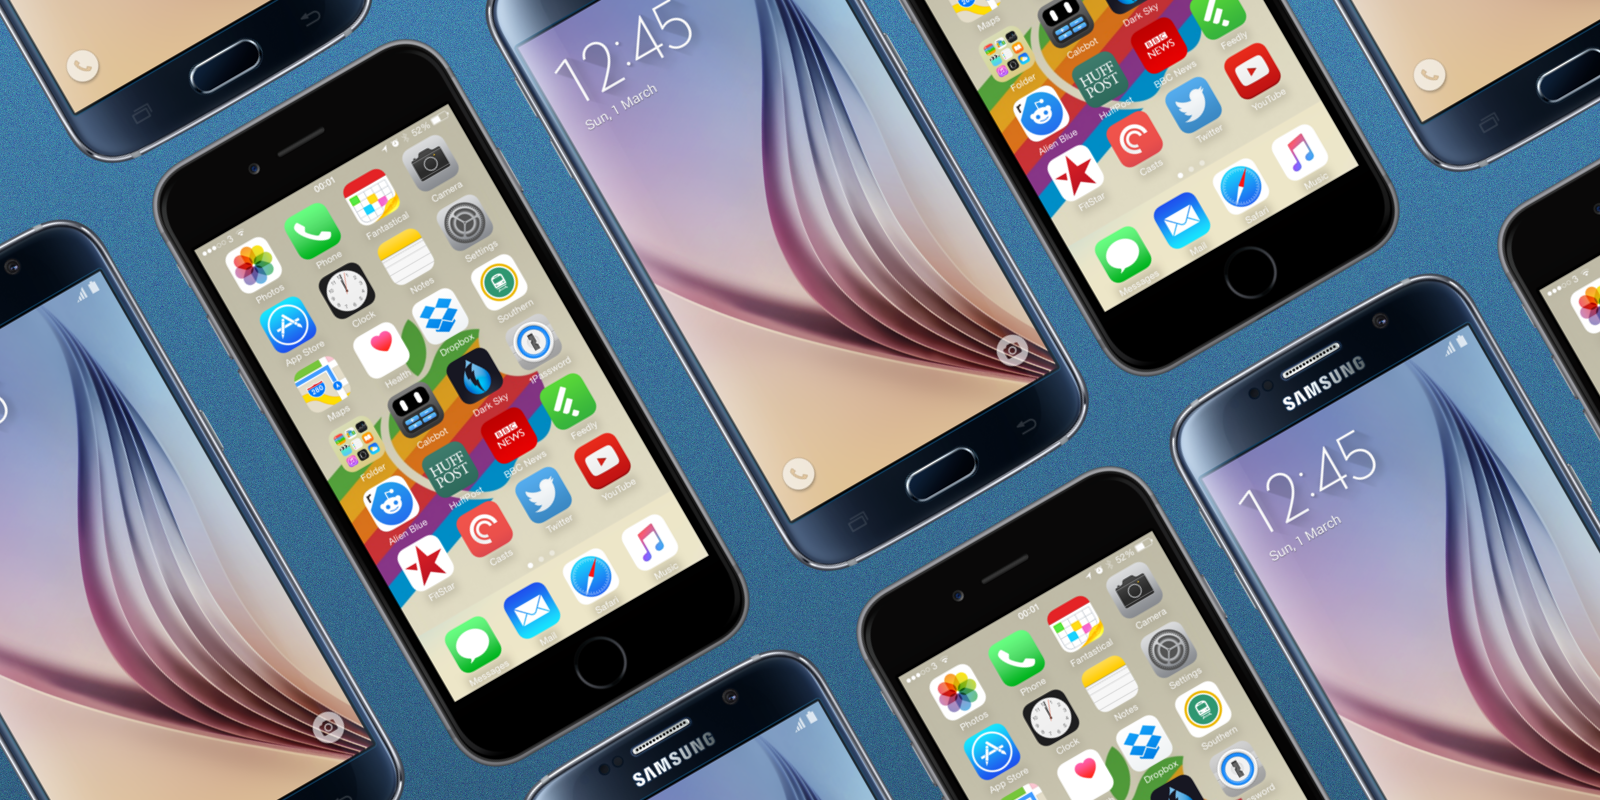 Xiaomi samsung iphone. Айфон самсунг. Смартфоны самсунг и айфон. Смартфоны много разных. Разние смартфони айфон, самсунг.